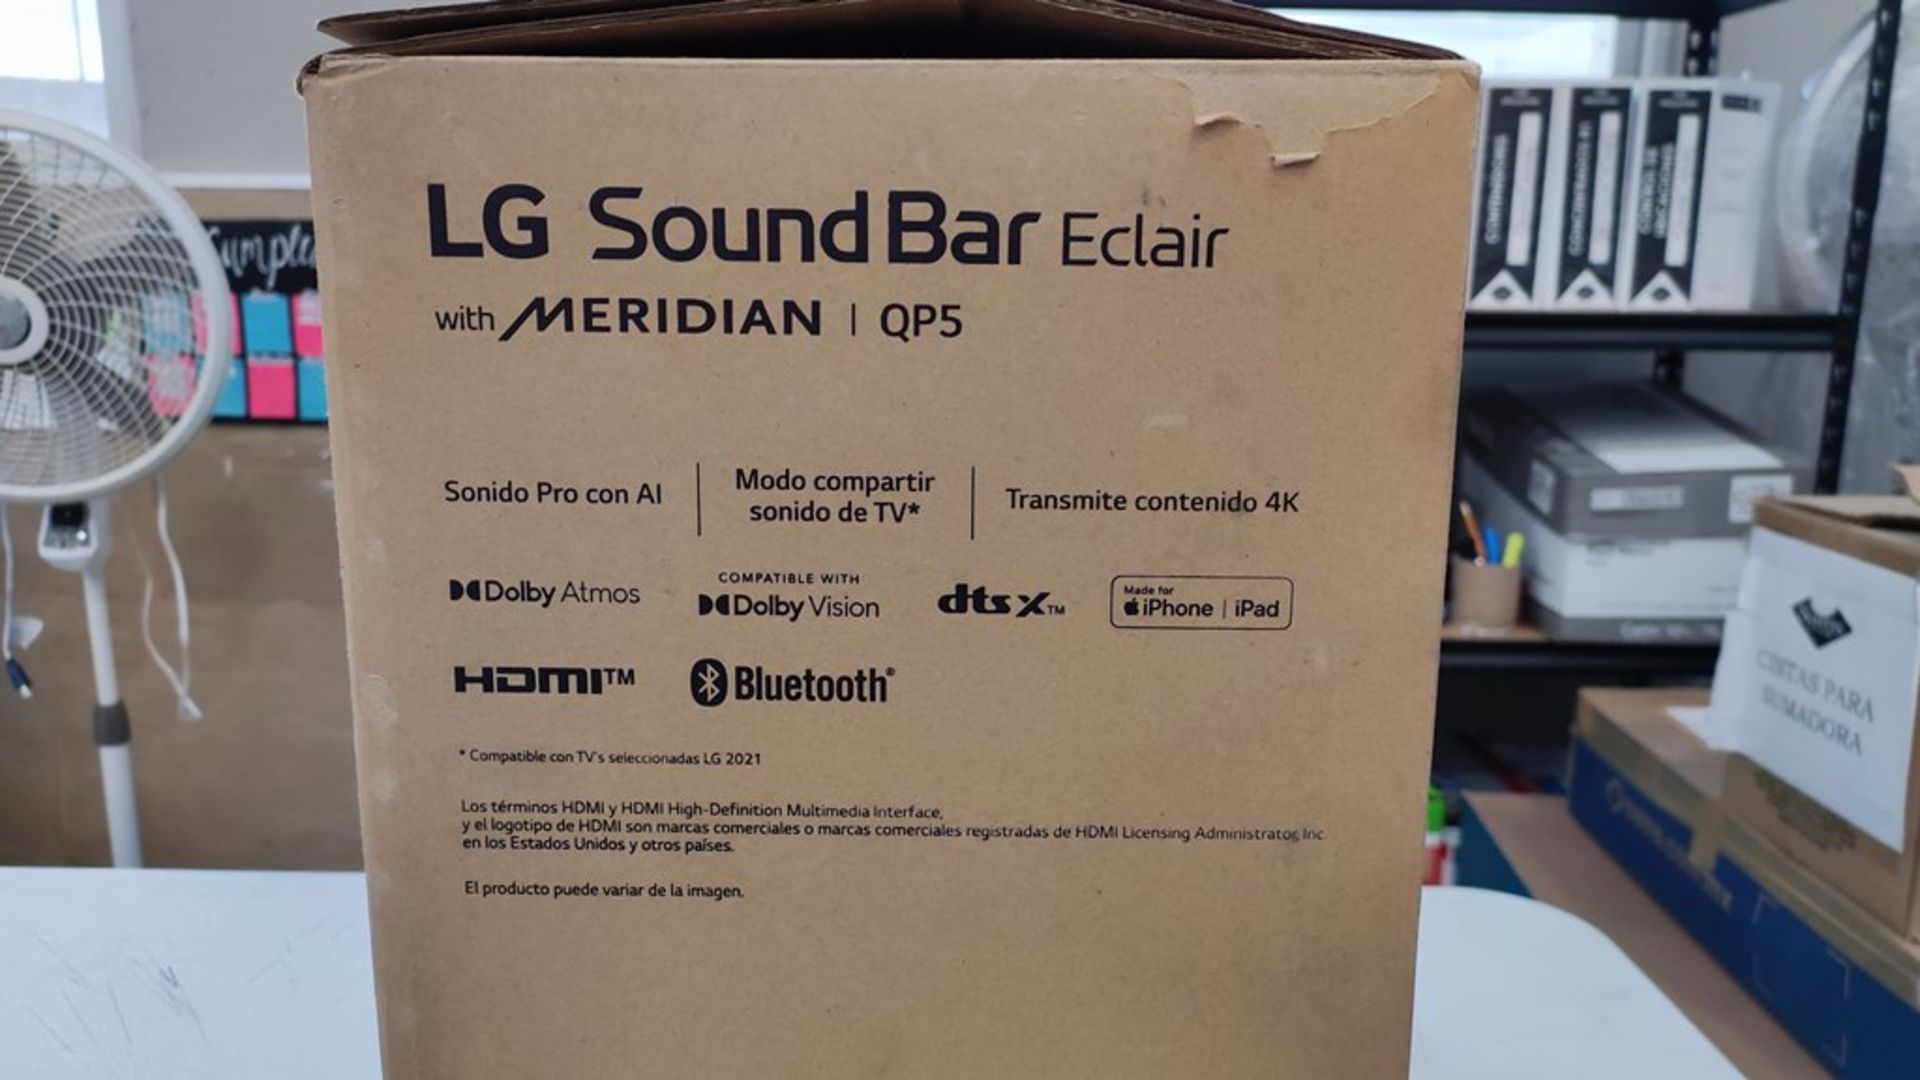 1 Bocina Marca LG SoundBar Eclair de 3.1.2 Canales, HDMI y Bluetooth. Favor de Inspeccionar. (No se - Image 7 of 11